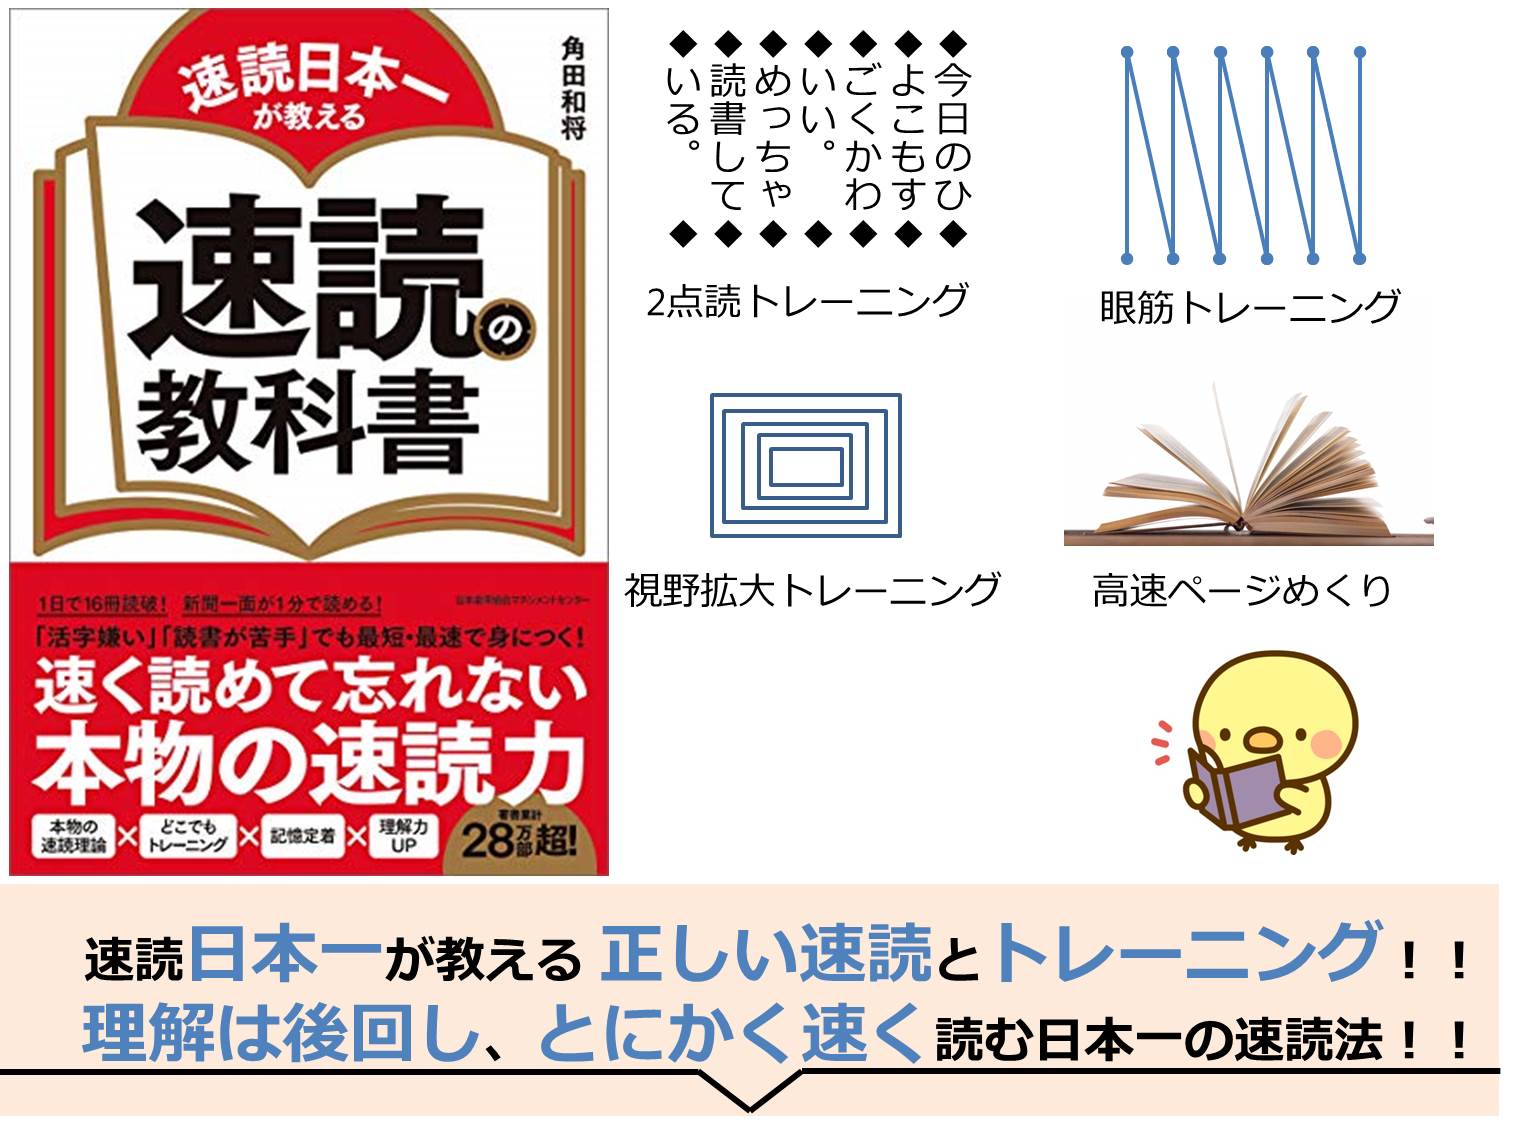 3ポイントで要約 速読日本一が教える 速読の教科書 角田和将 とにかく早く読む 日本一が教える速読のトレーニング方法